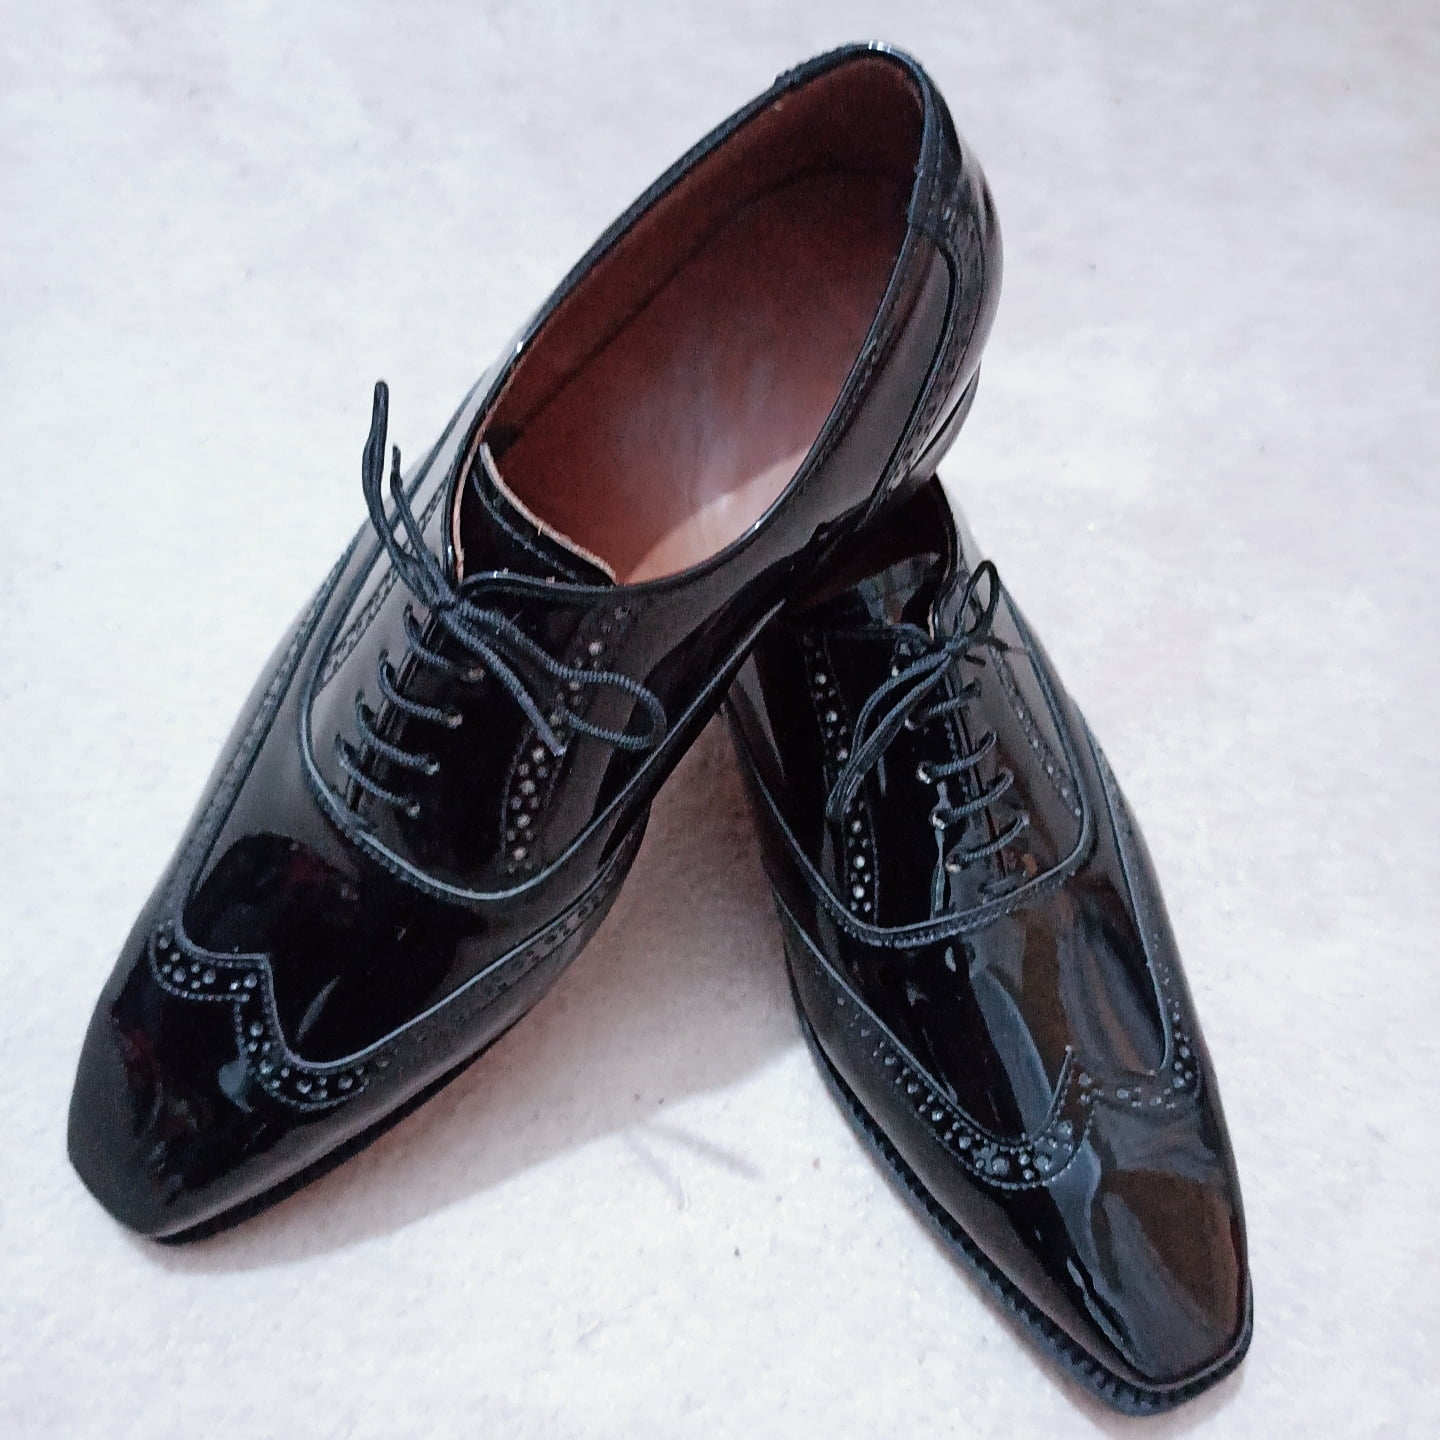 Patent Leather Shoes - Mens Patent Leather Shoes